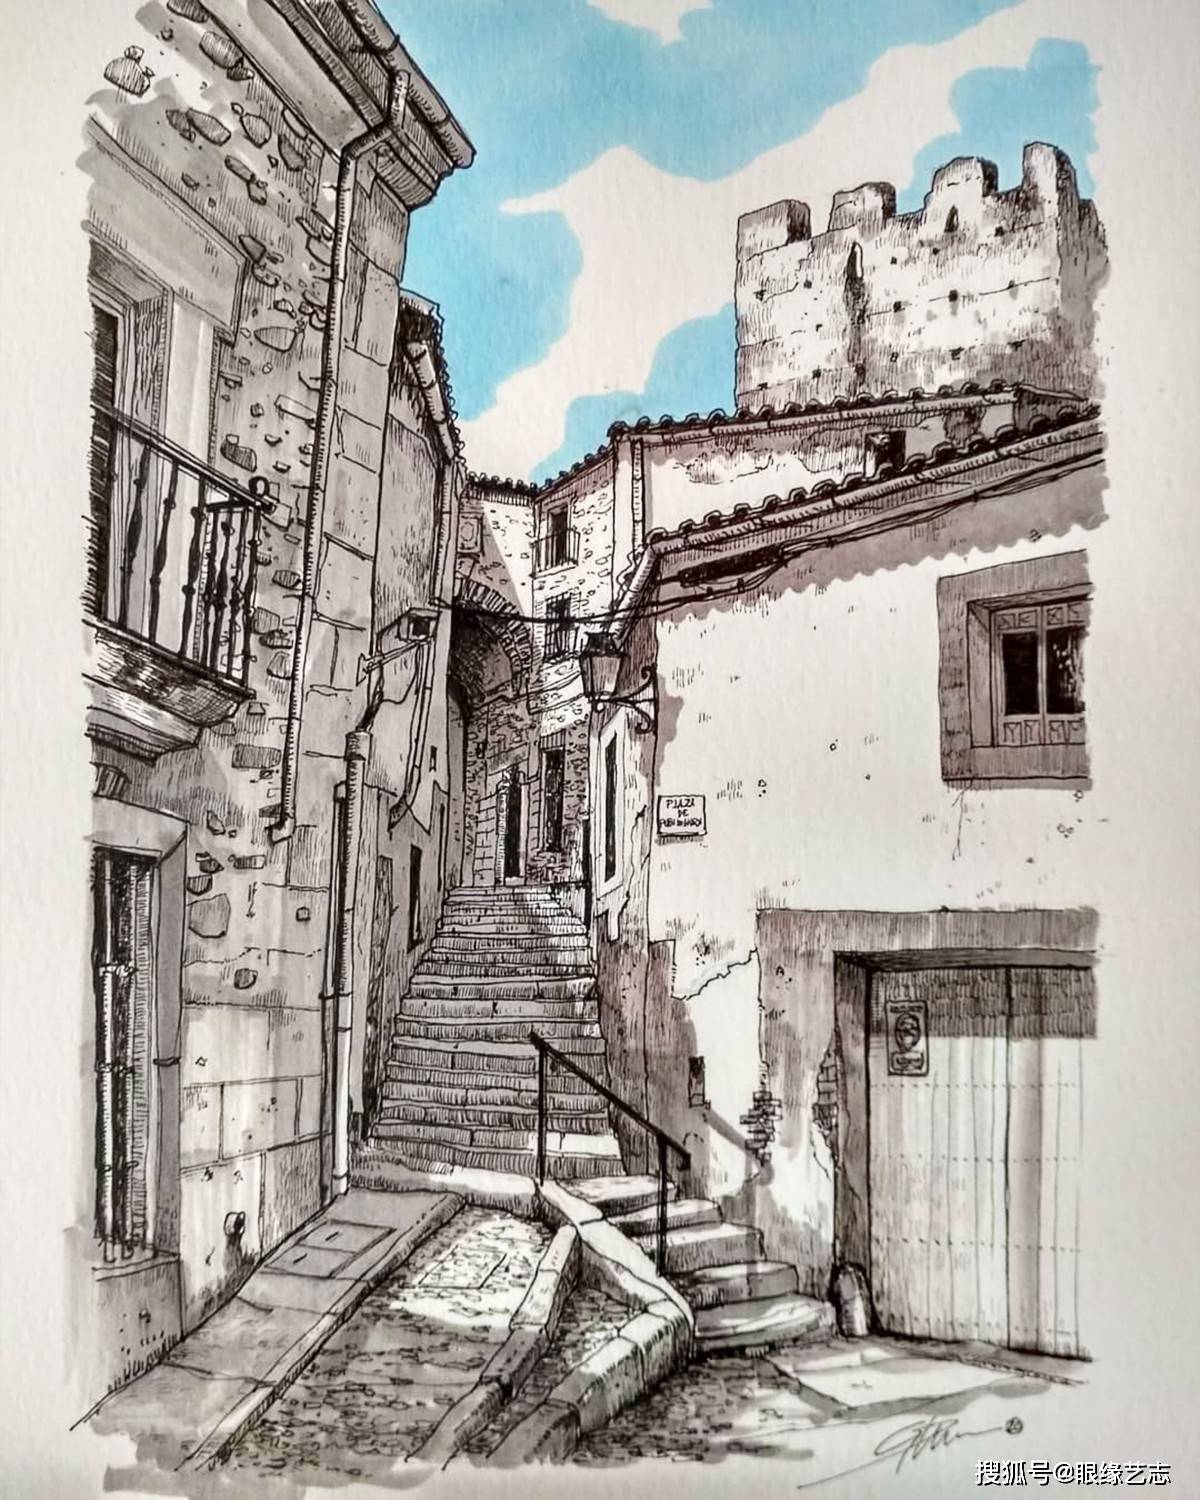 原创城市速写者:西班牙画家的淡彩街景,过客眼中的城市味道